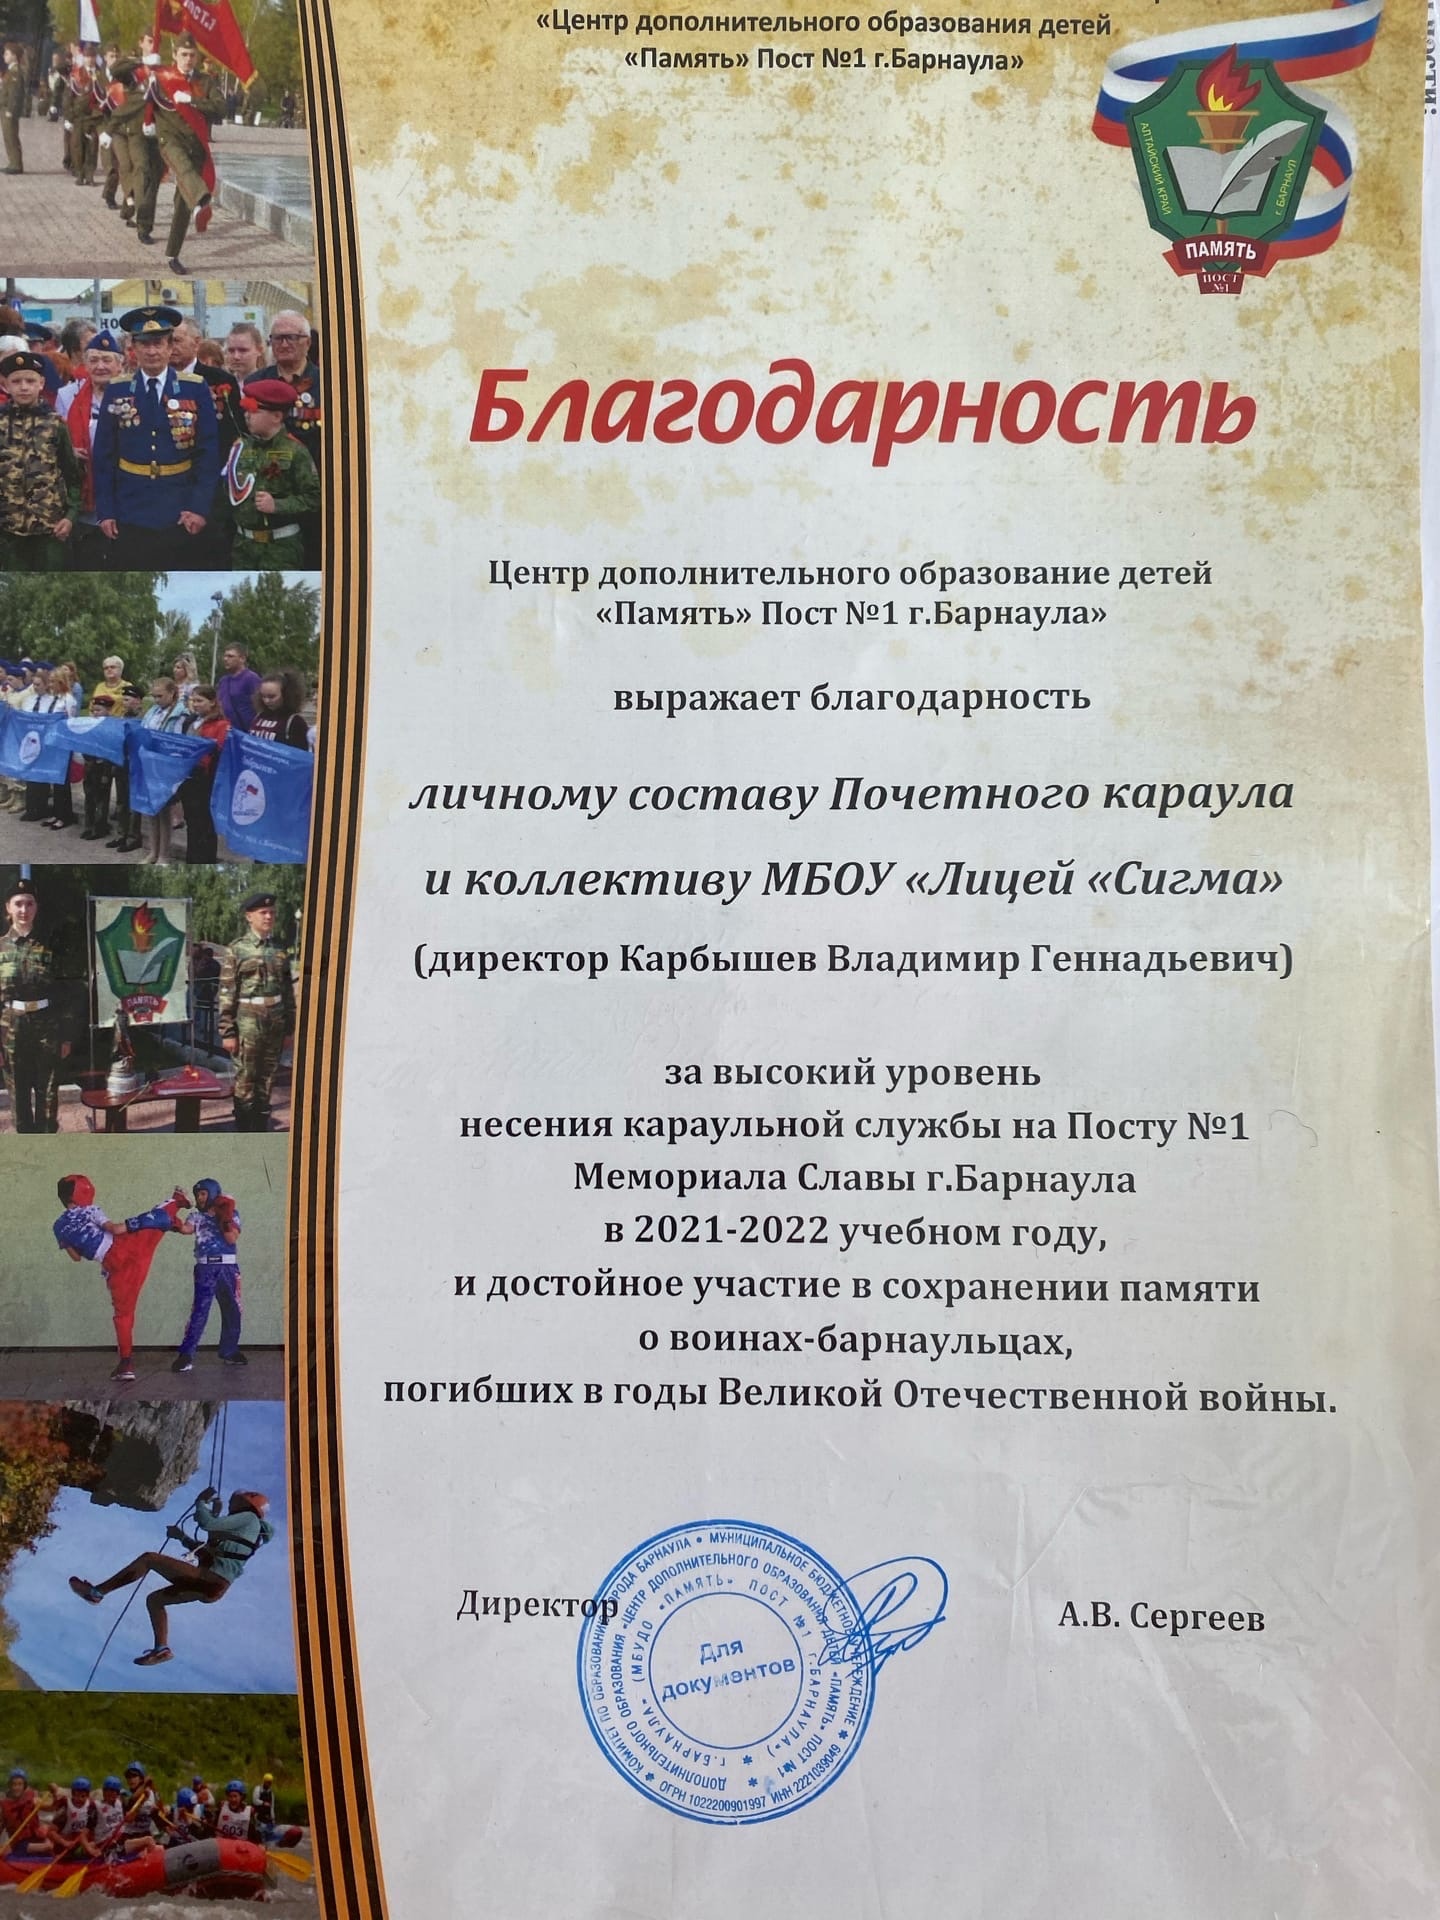 8 сентября в центре дополнительного образования детей «Память» города Барнаула состоялось награждение Почетного караула и коллектива МБОУ «Лицей «Сигма»